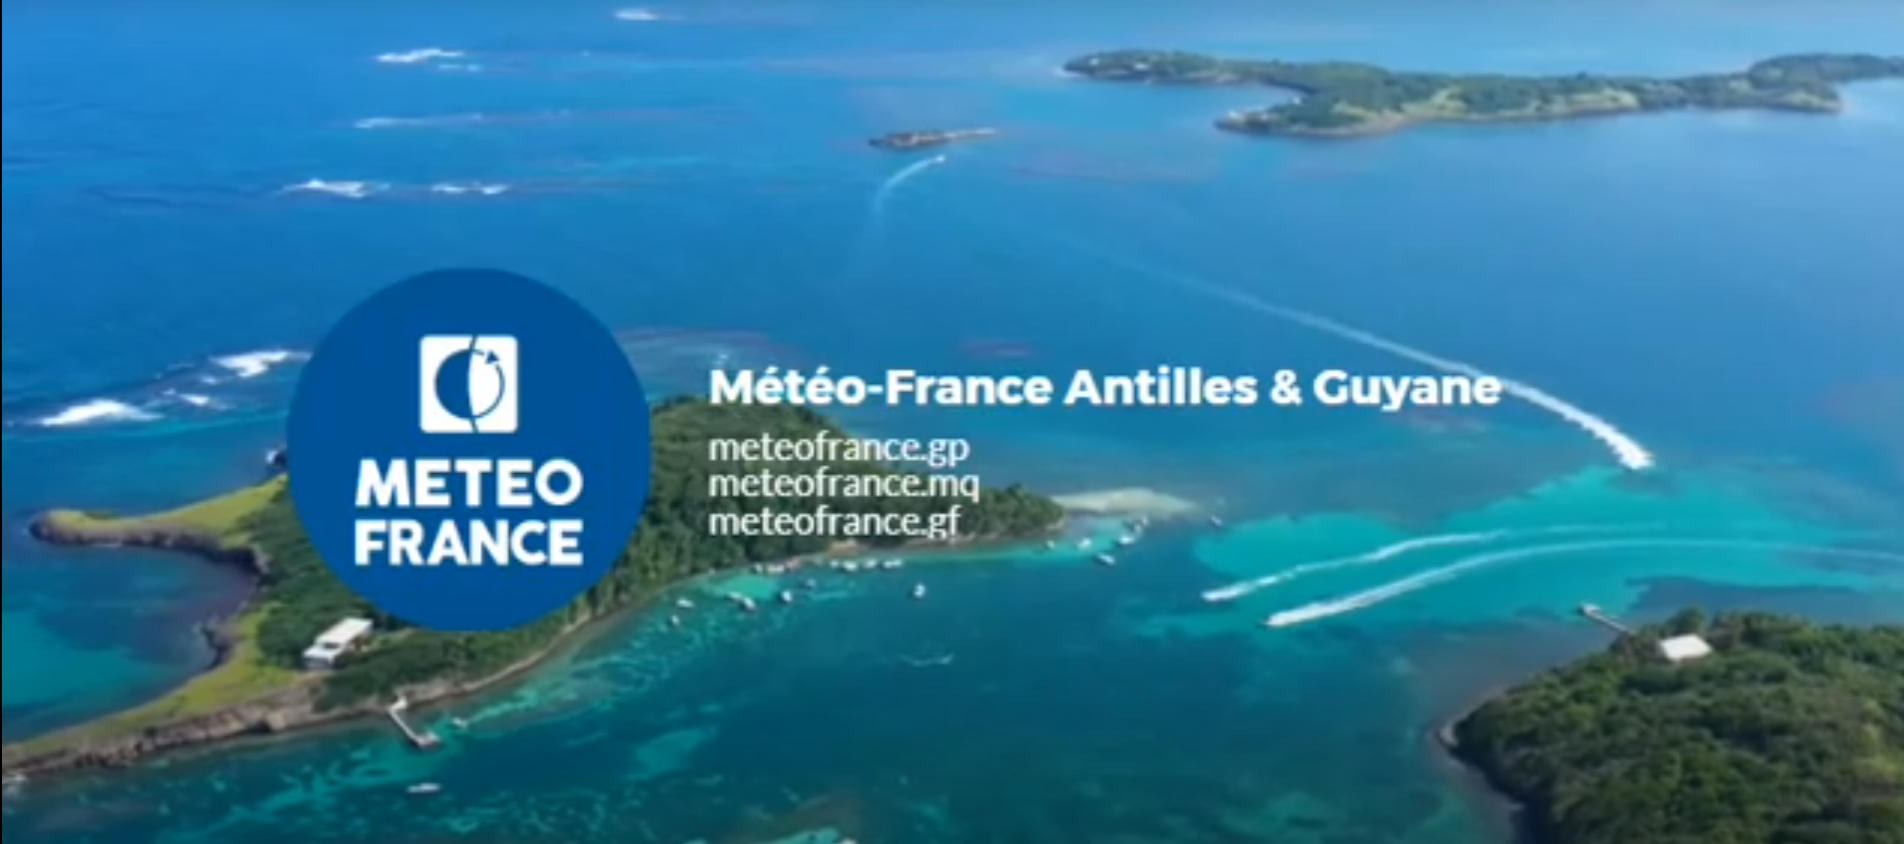     Météo France propose un site internet dédié à la Martinique

